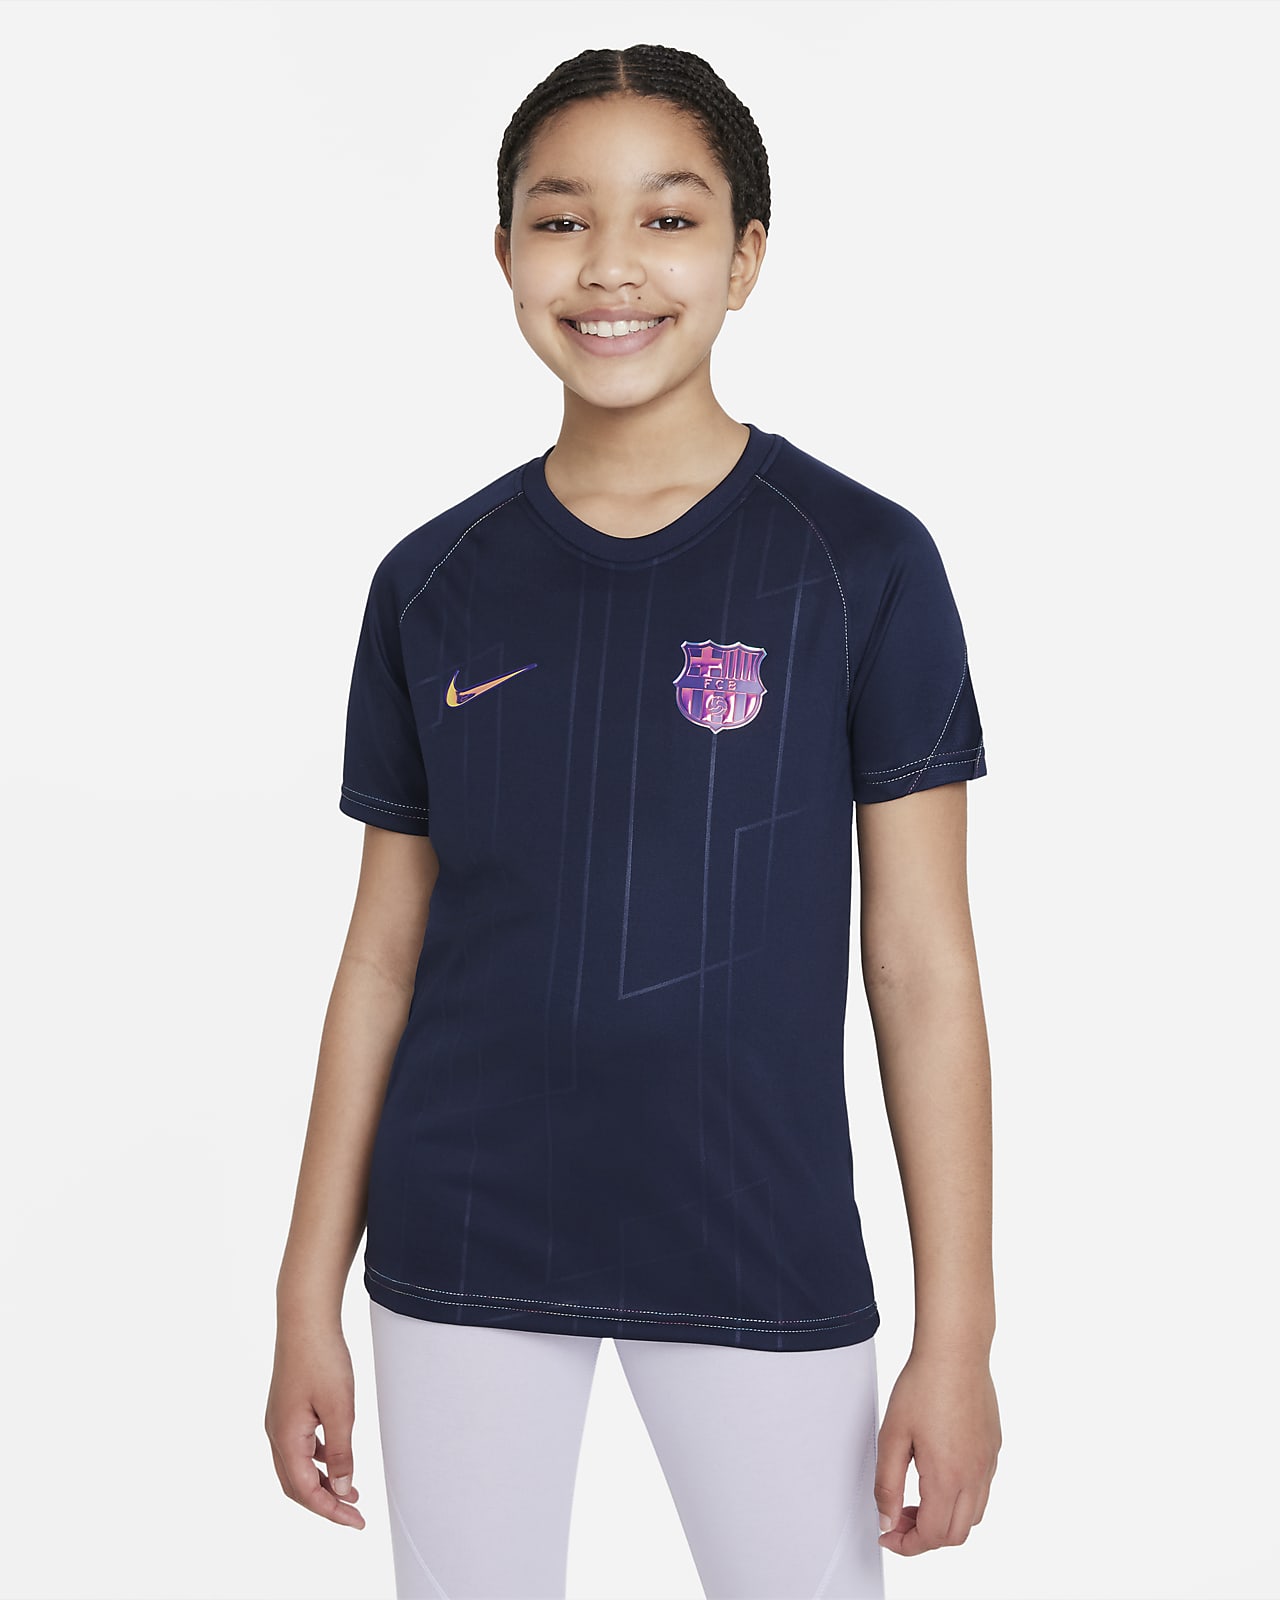 Ποδοσφαιρική μπλούζα προθέρμανσης Nike Dri-FIT εκτός έδρας Μπαρτσελόνα για μεγάλα παιδιά